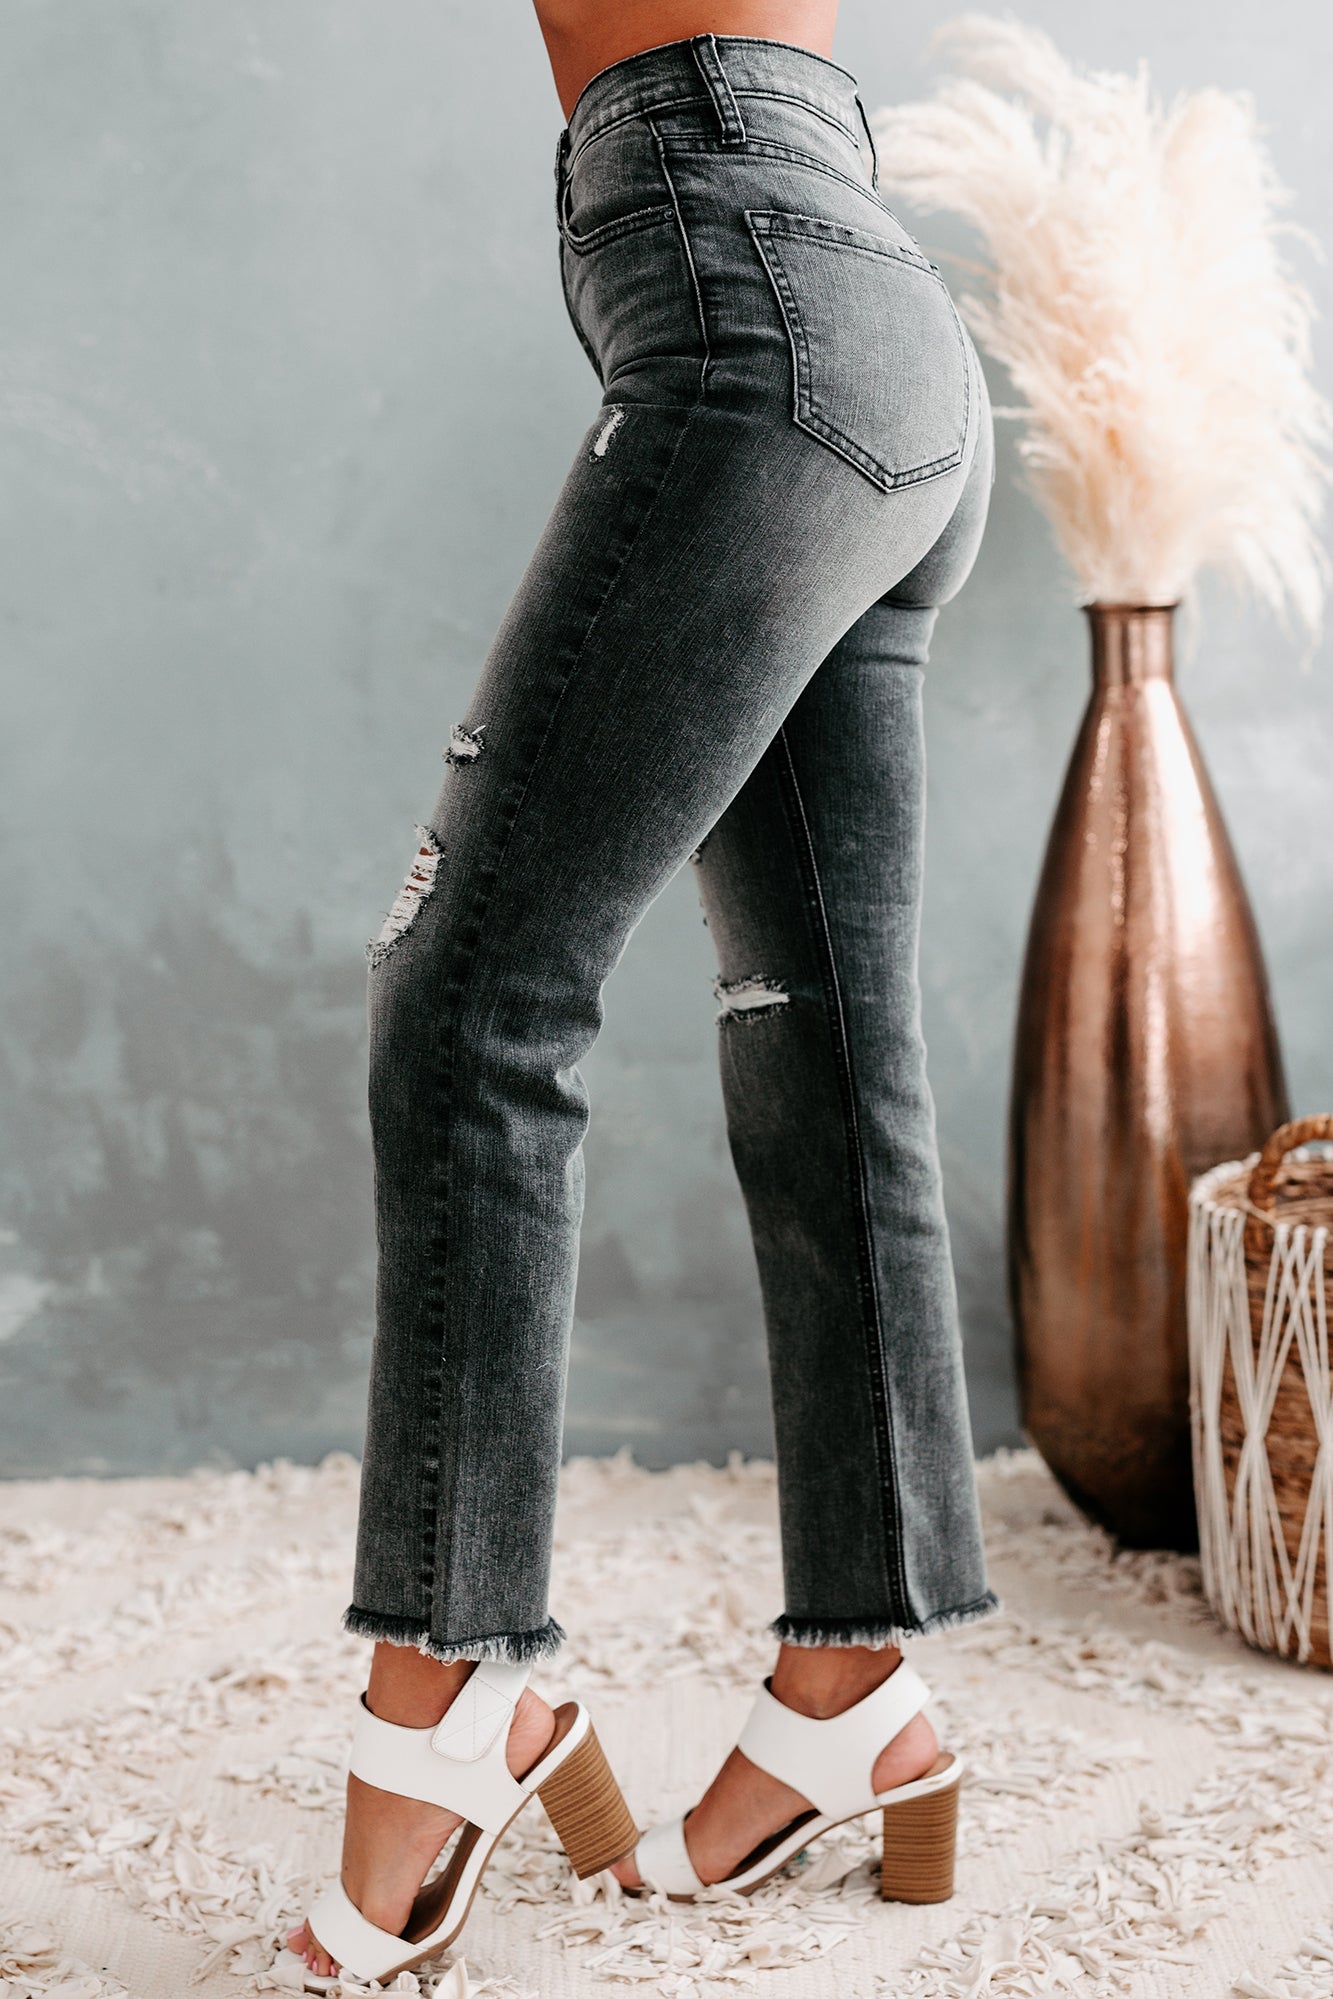 Reece Sneak Peek High Rise Distressed Straight Leg Jeans (Black Wash) - NanaMacs